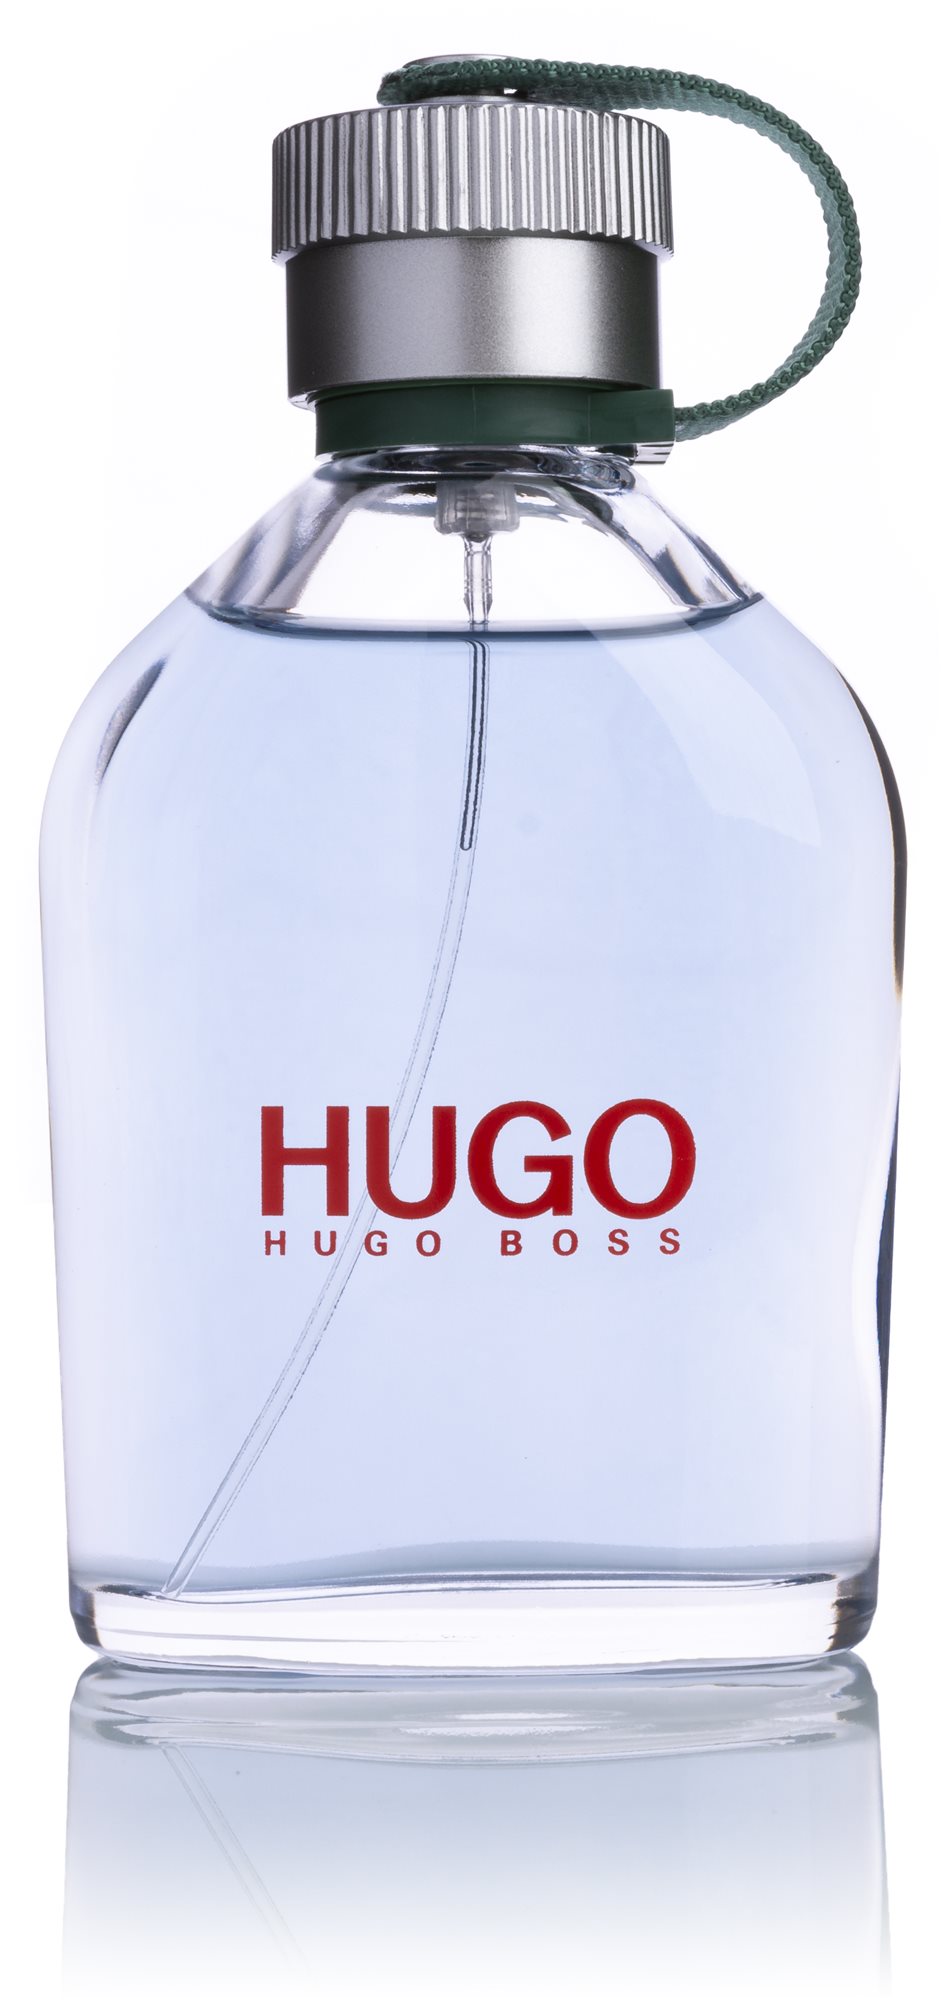 HUGO BOSS Hugo EdT